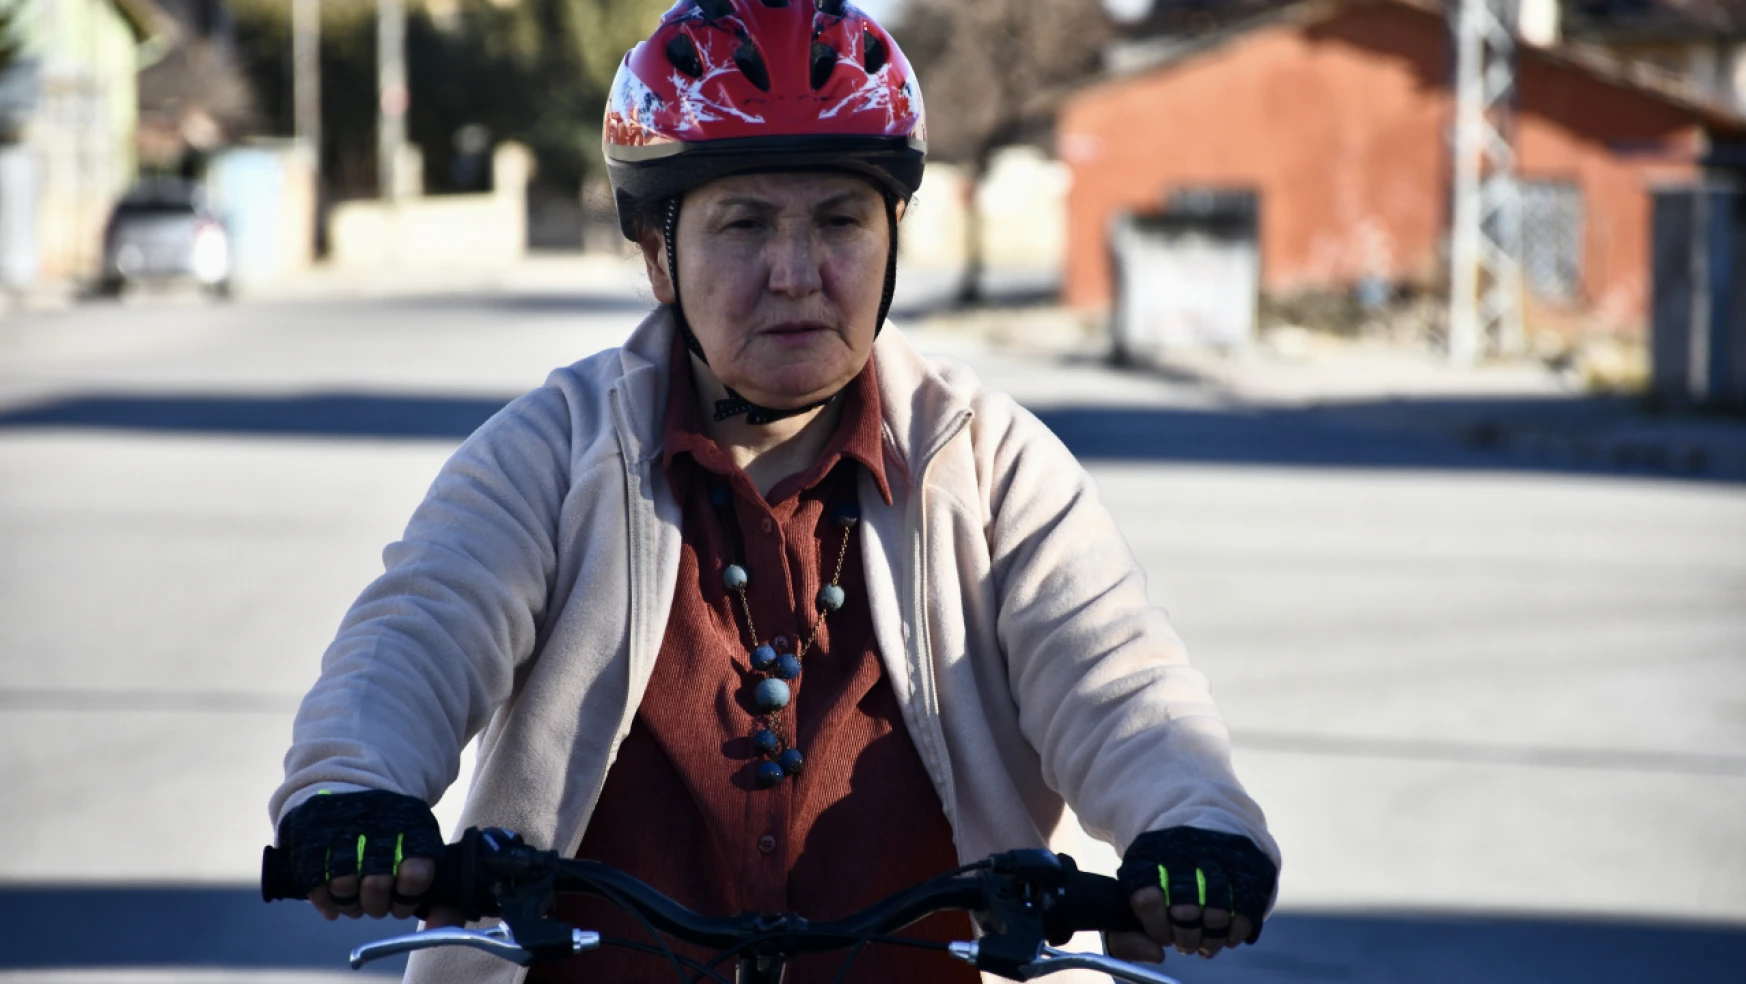 Emekli öğretmen bisiklet sürmeyi öğrenmek için 67 yaşında kursa gitti